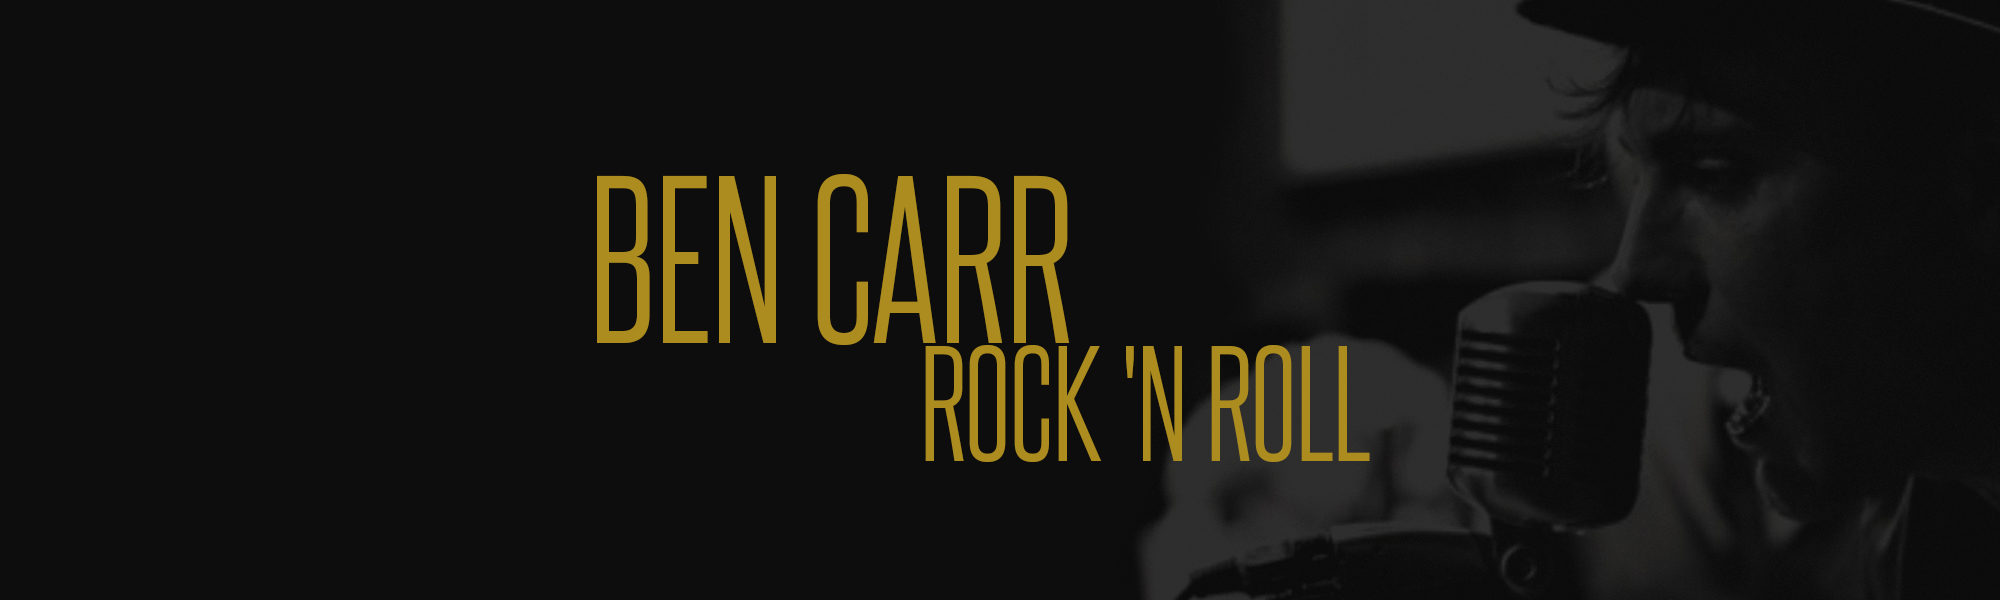 ben carr rock 'n roll